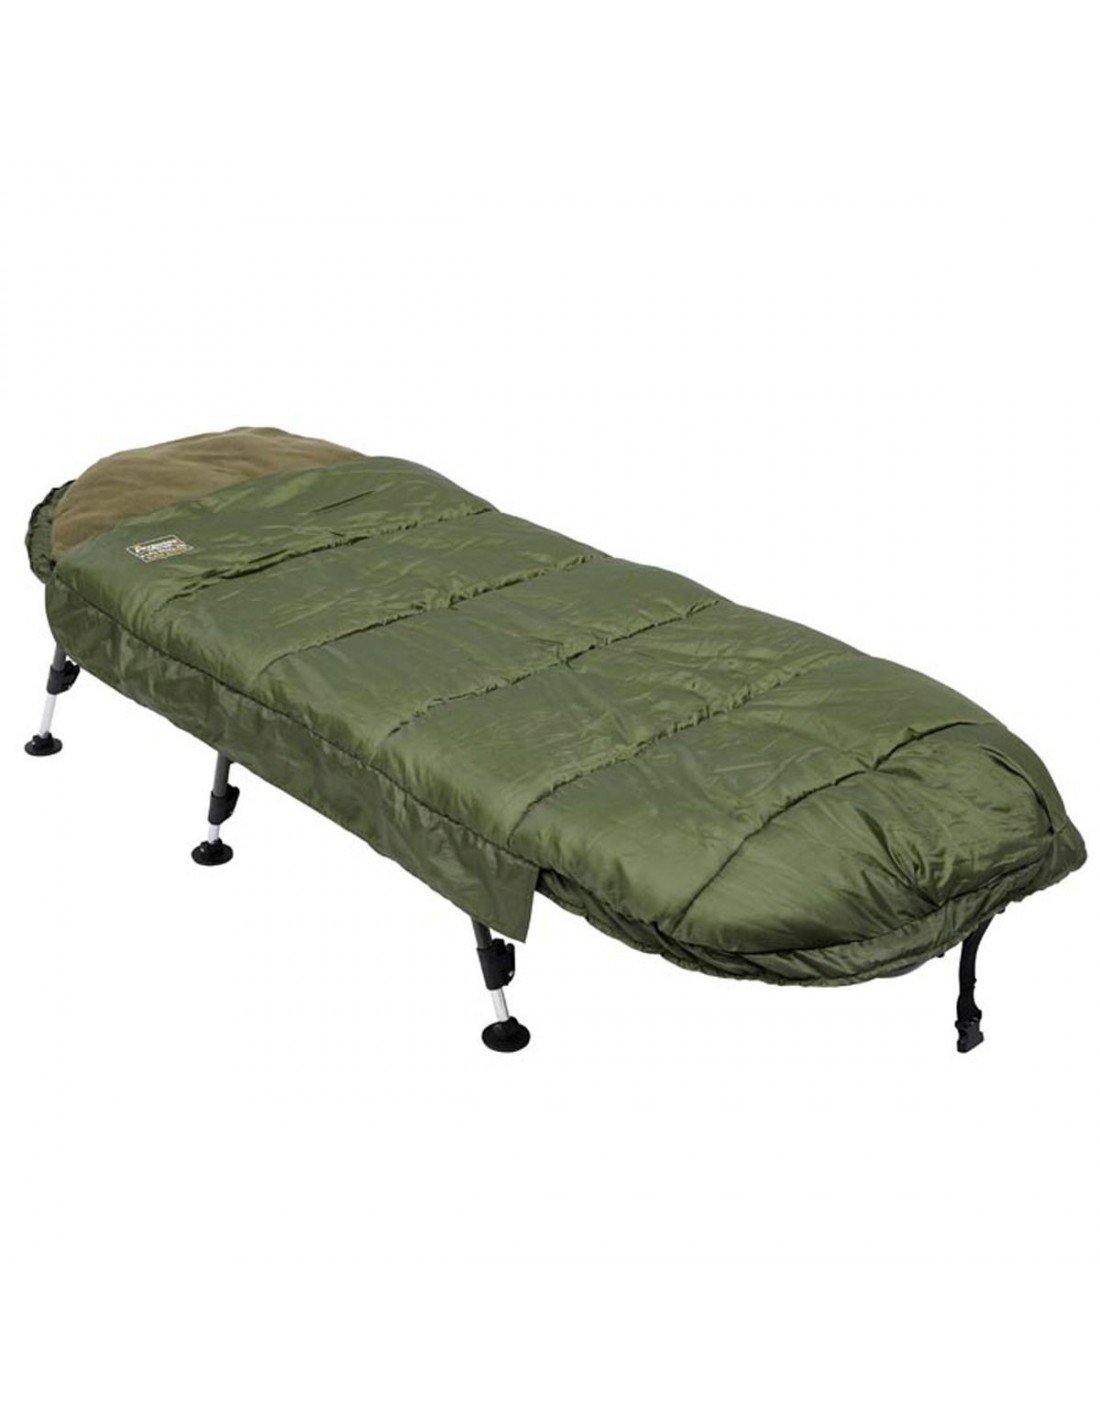 Prologic Avenger Sleeping Bag & Bedchair System 6 Leg легло - система за сън